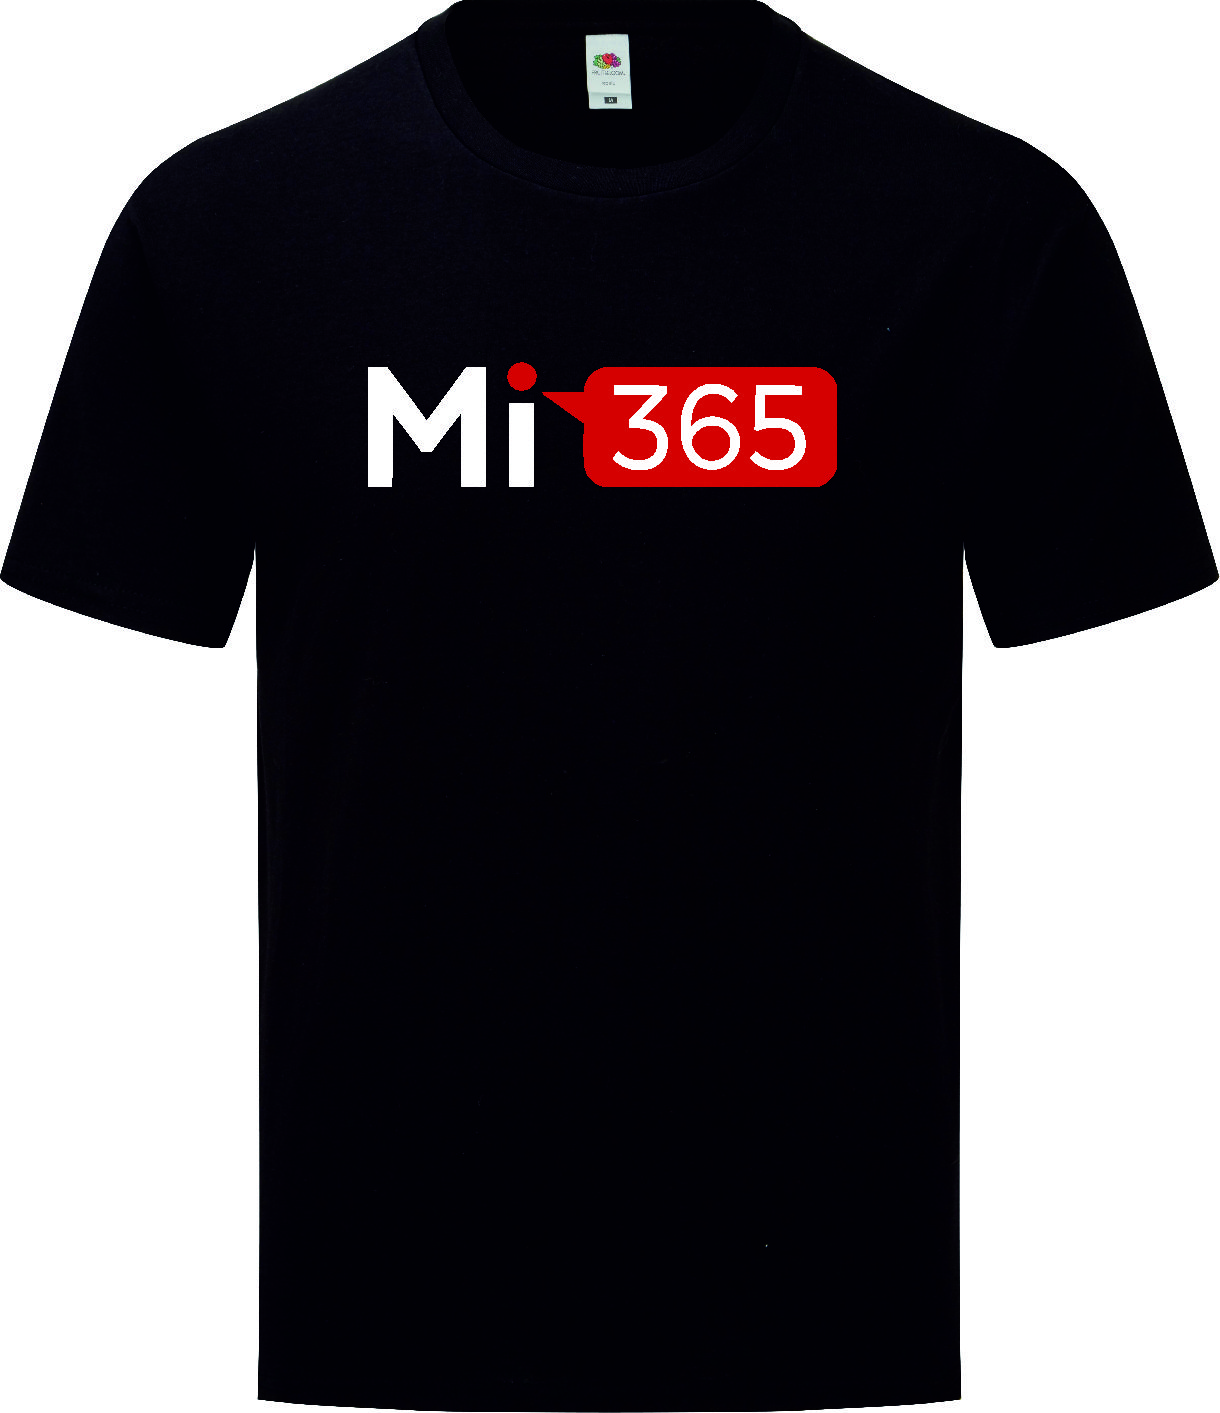 Mi365 - Tee